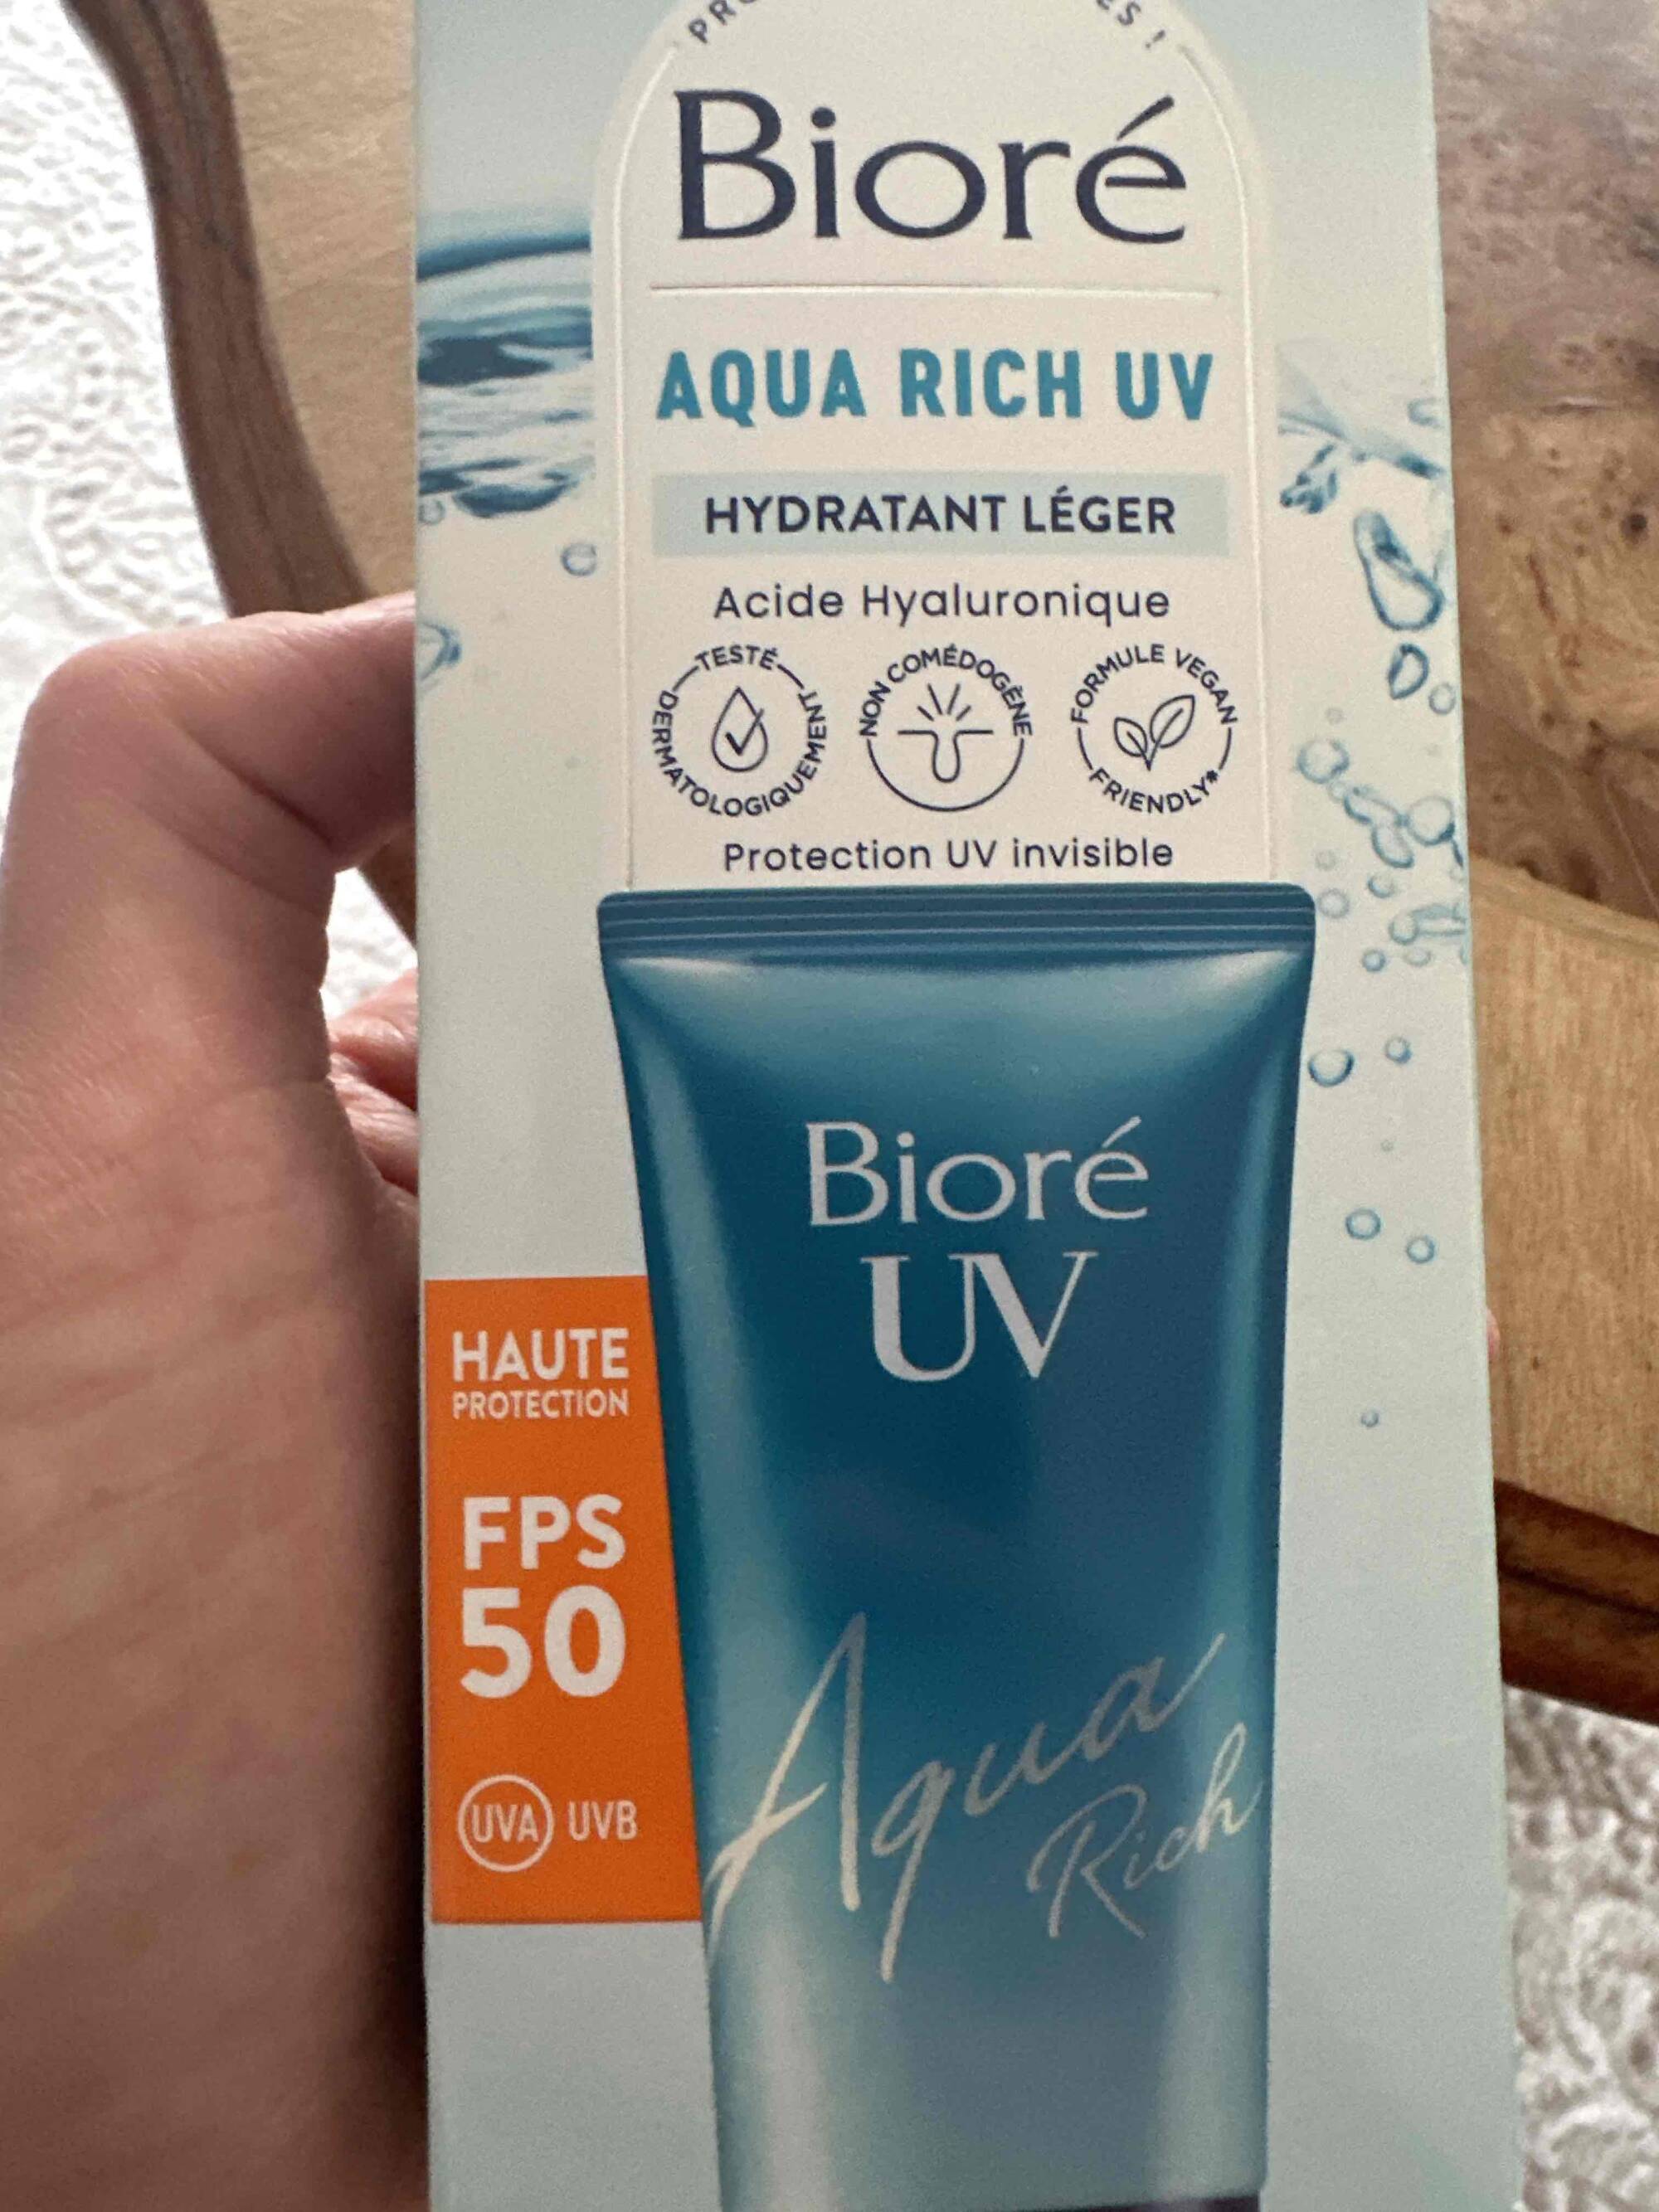 BIORÉ - Aqua rich uv FPS 50